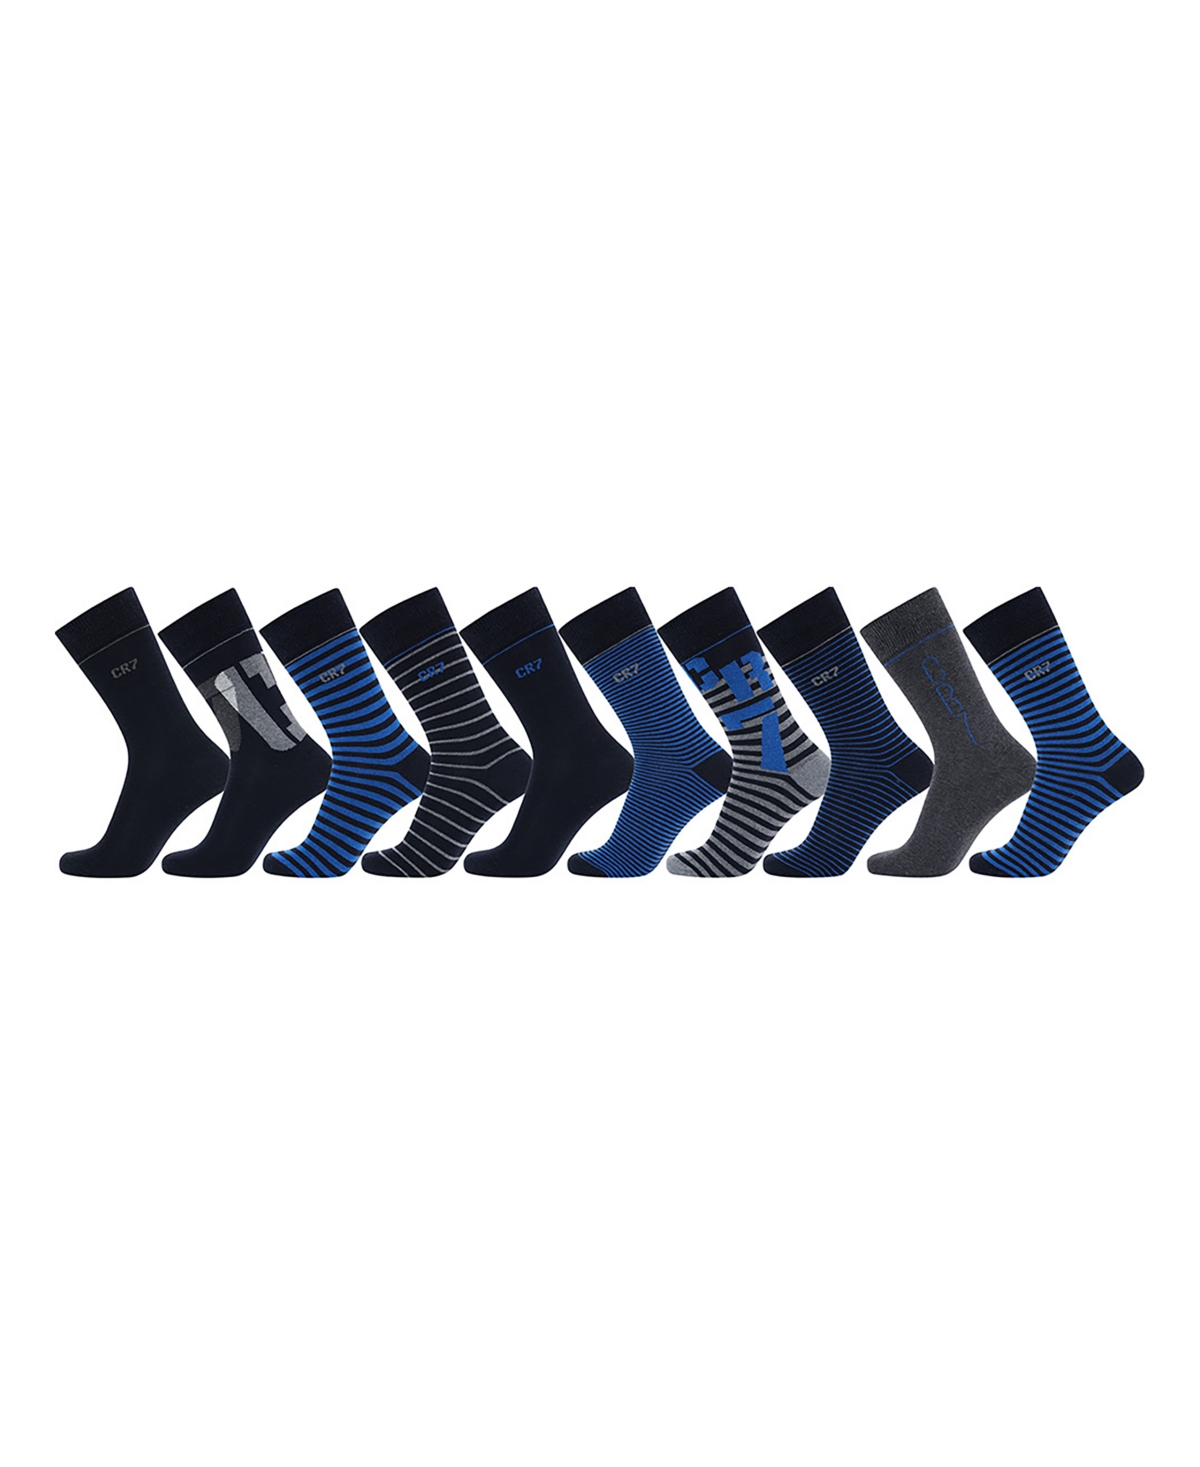 Men's Fashion Socks, Pack of 10 - Black, Blue, Gray